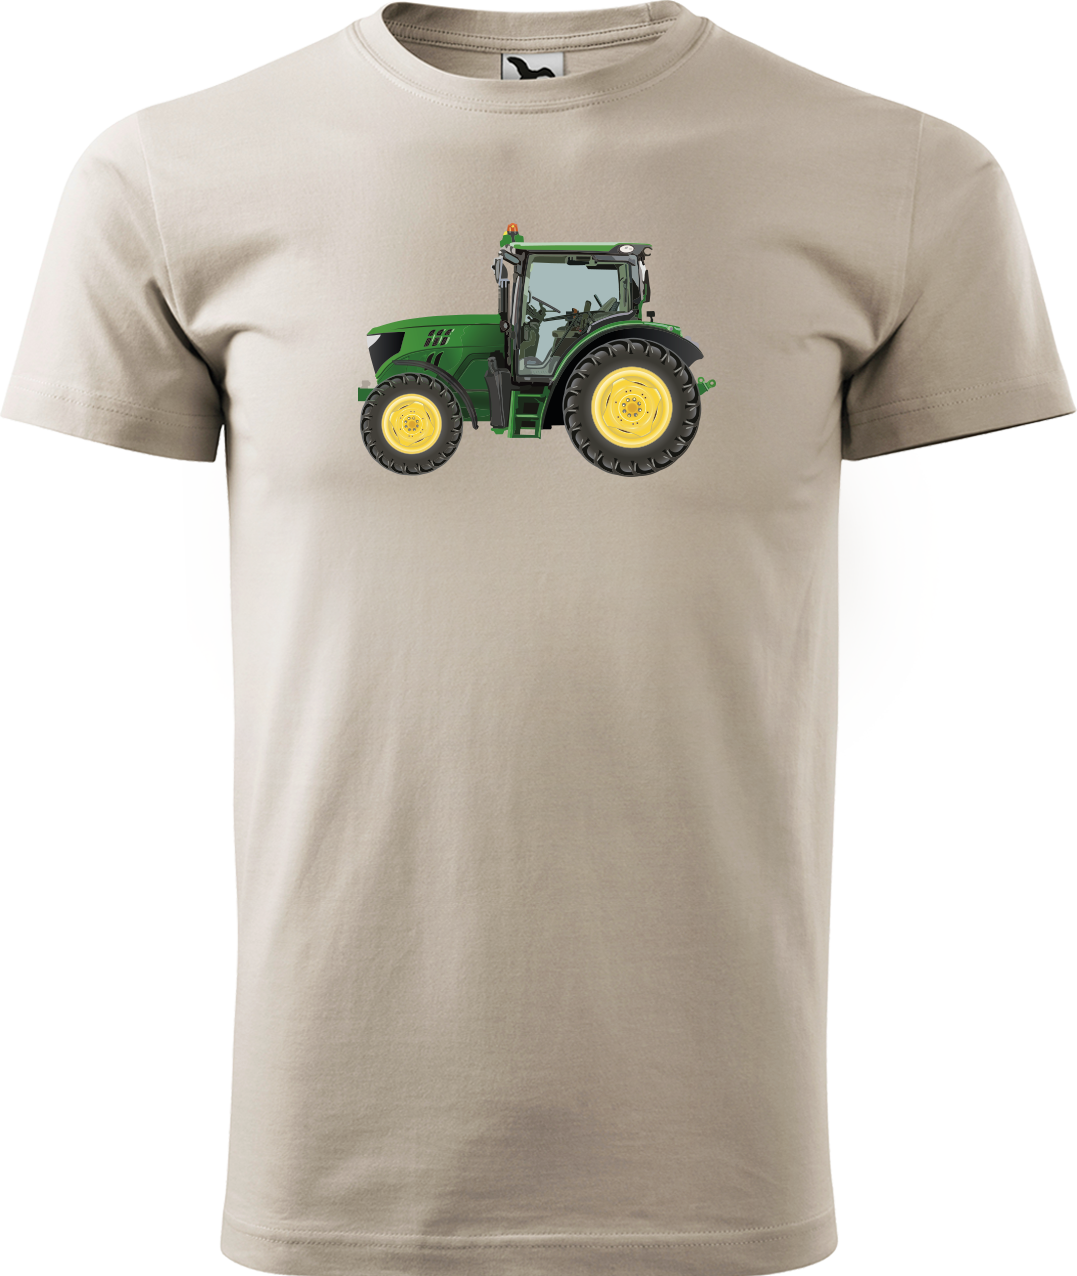 Tričko s traktorem - Zelený traktor Velikost: L, Barva: Béžová (51)